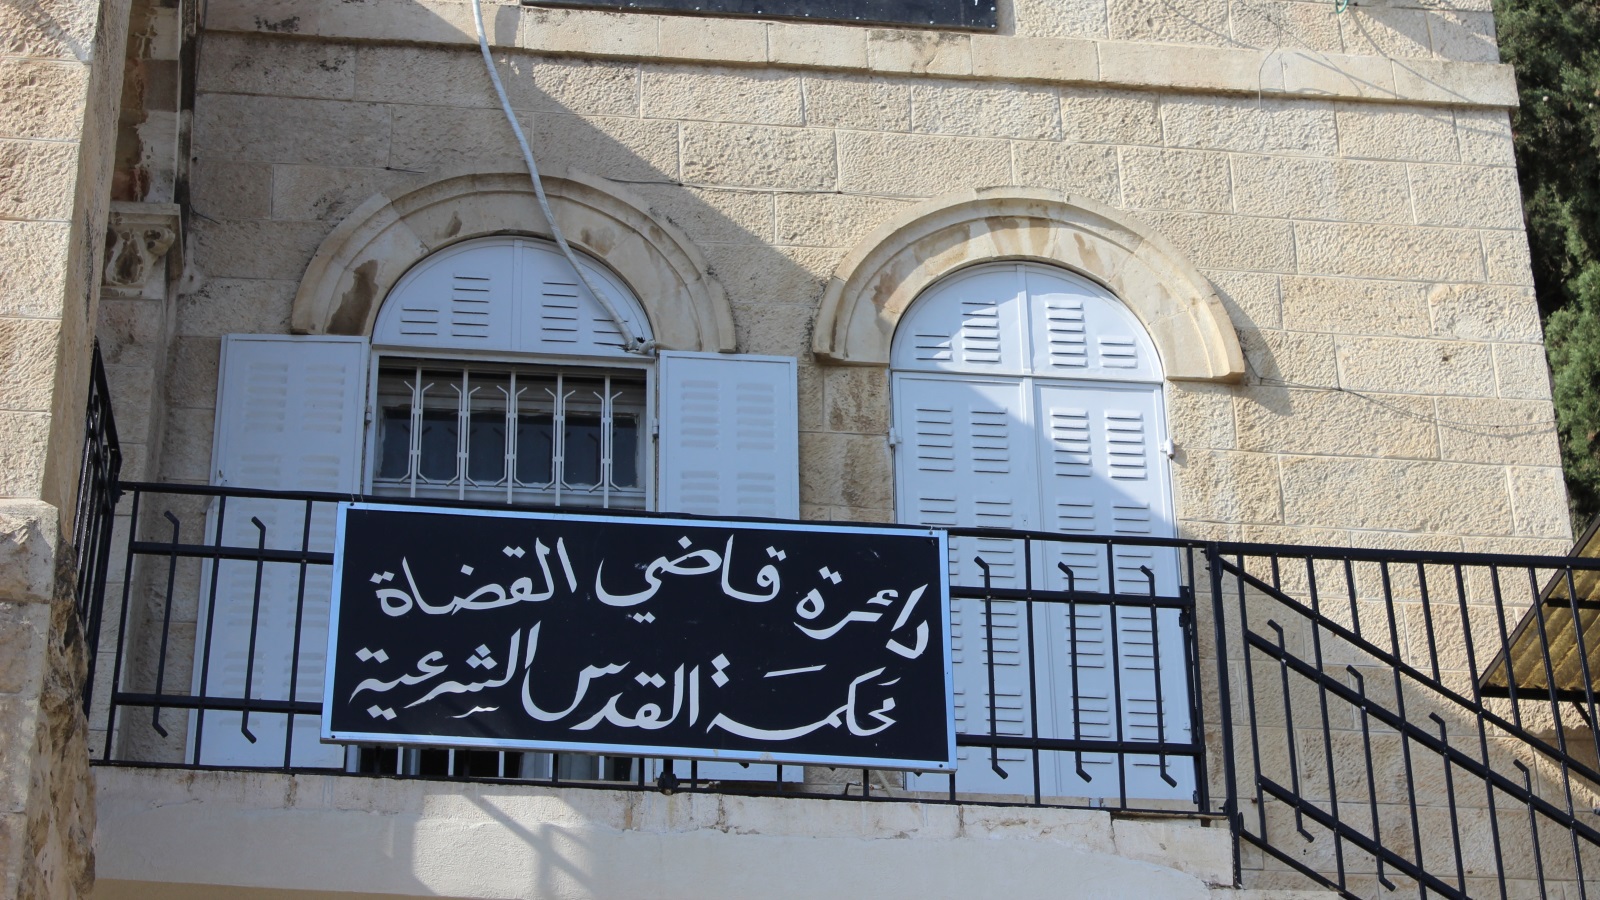 المحكمة الشرعية الأردنية في حي وادي الجوز في القدس (الجزيرة)